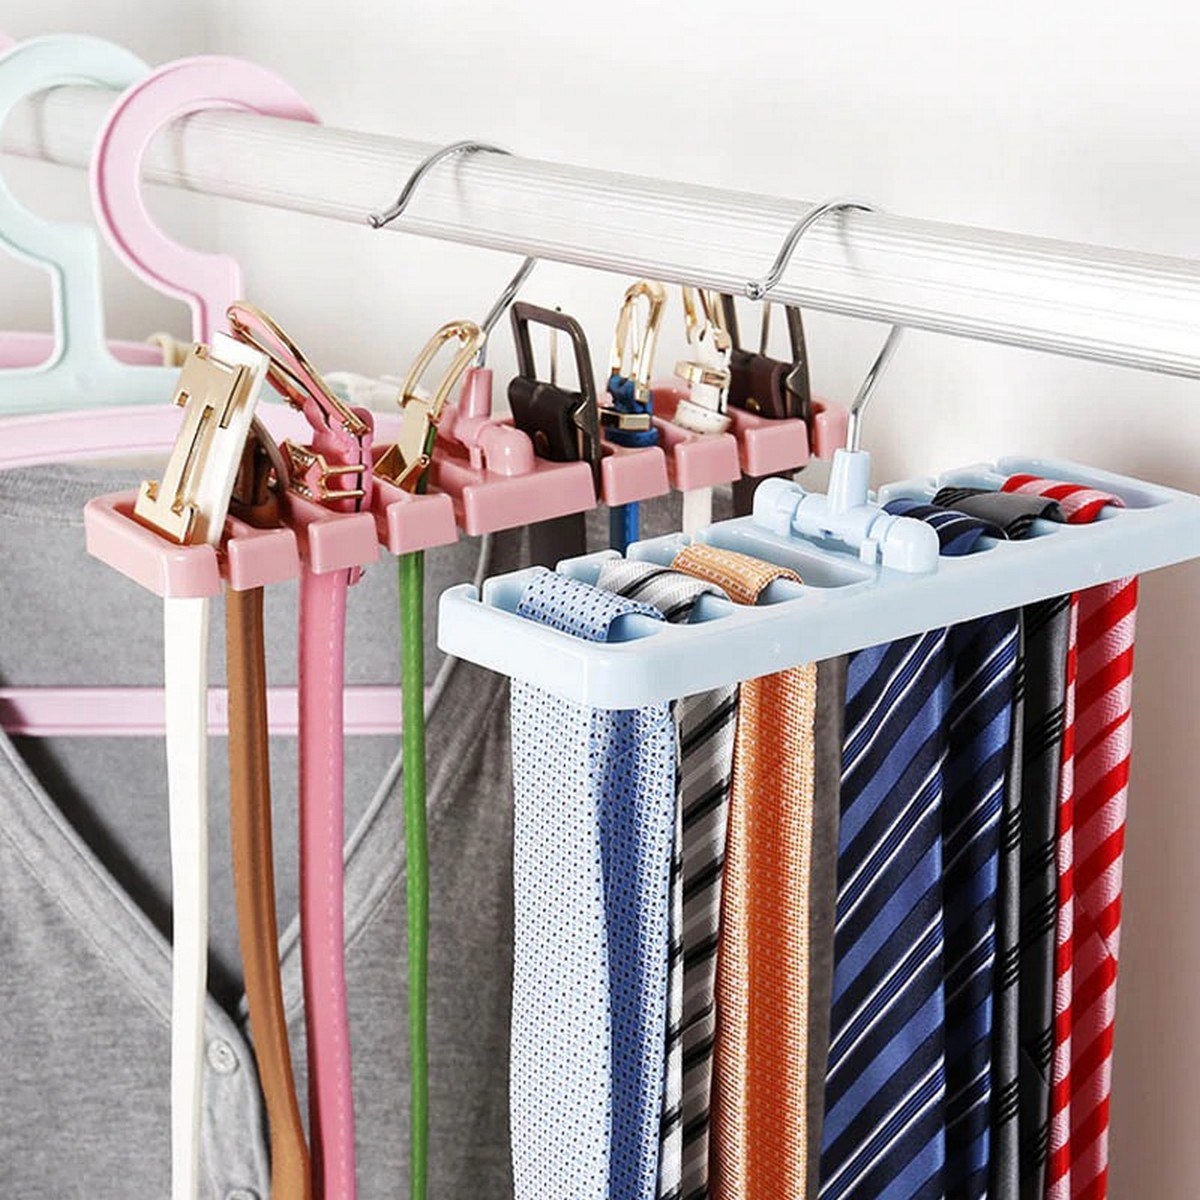 Tie, Scarf, and Belt Hangers -hanger type 5